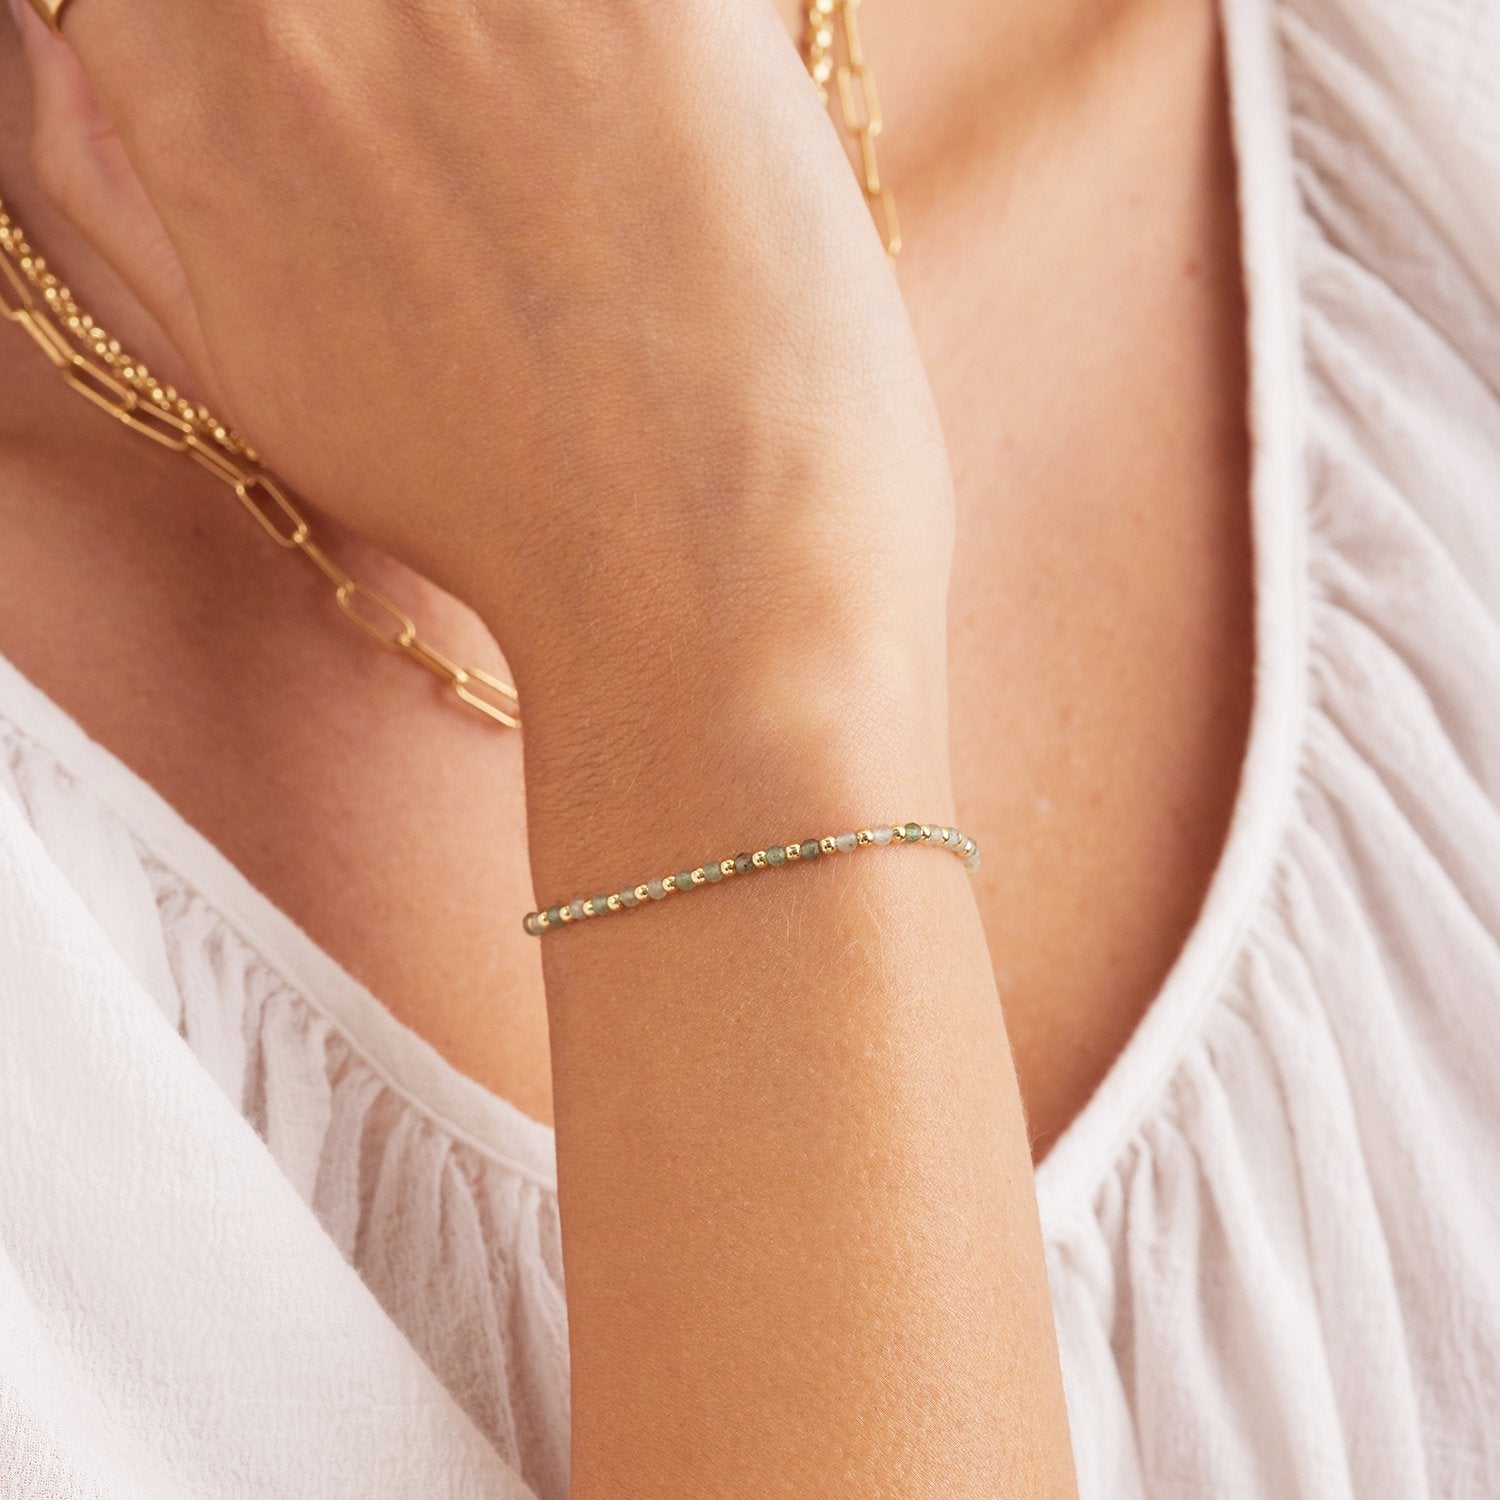 Power gemstone brooks bracelet for luck - gold / aventurine